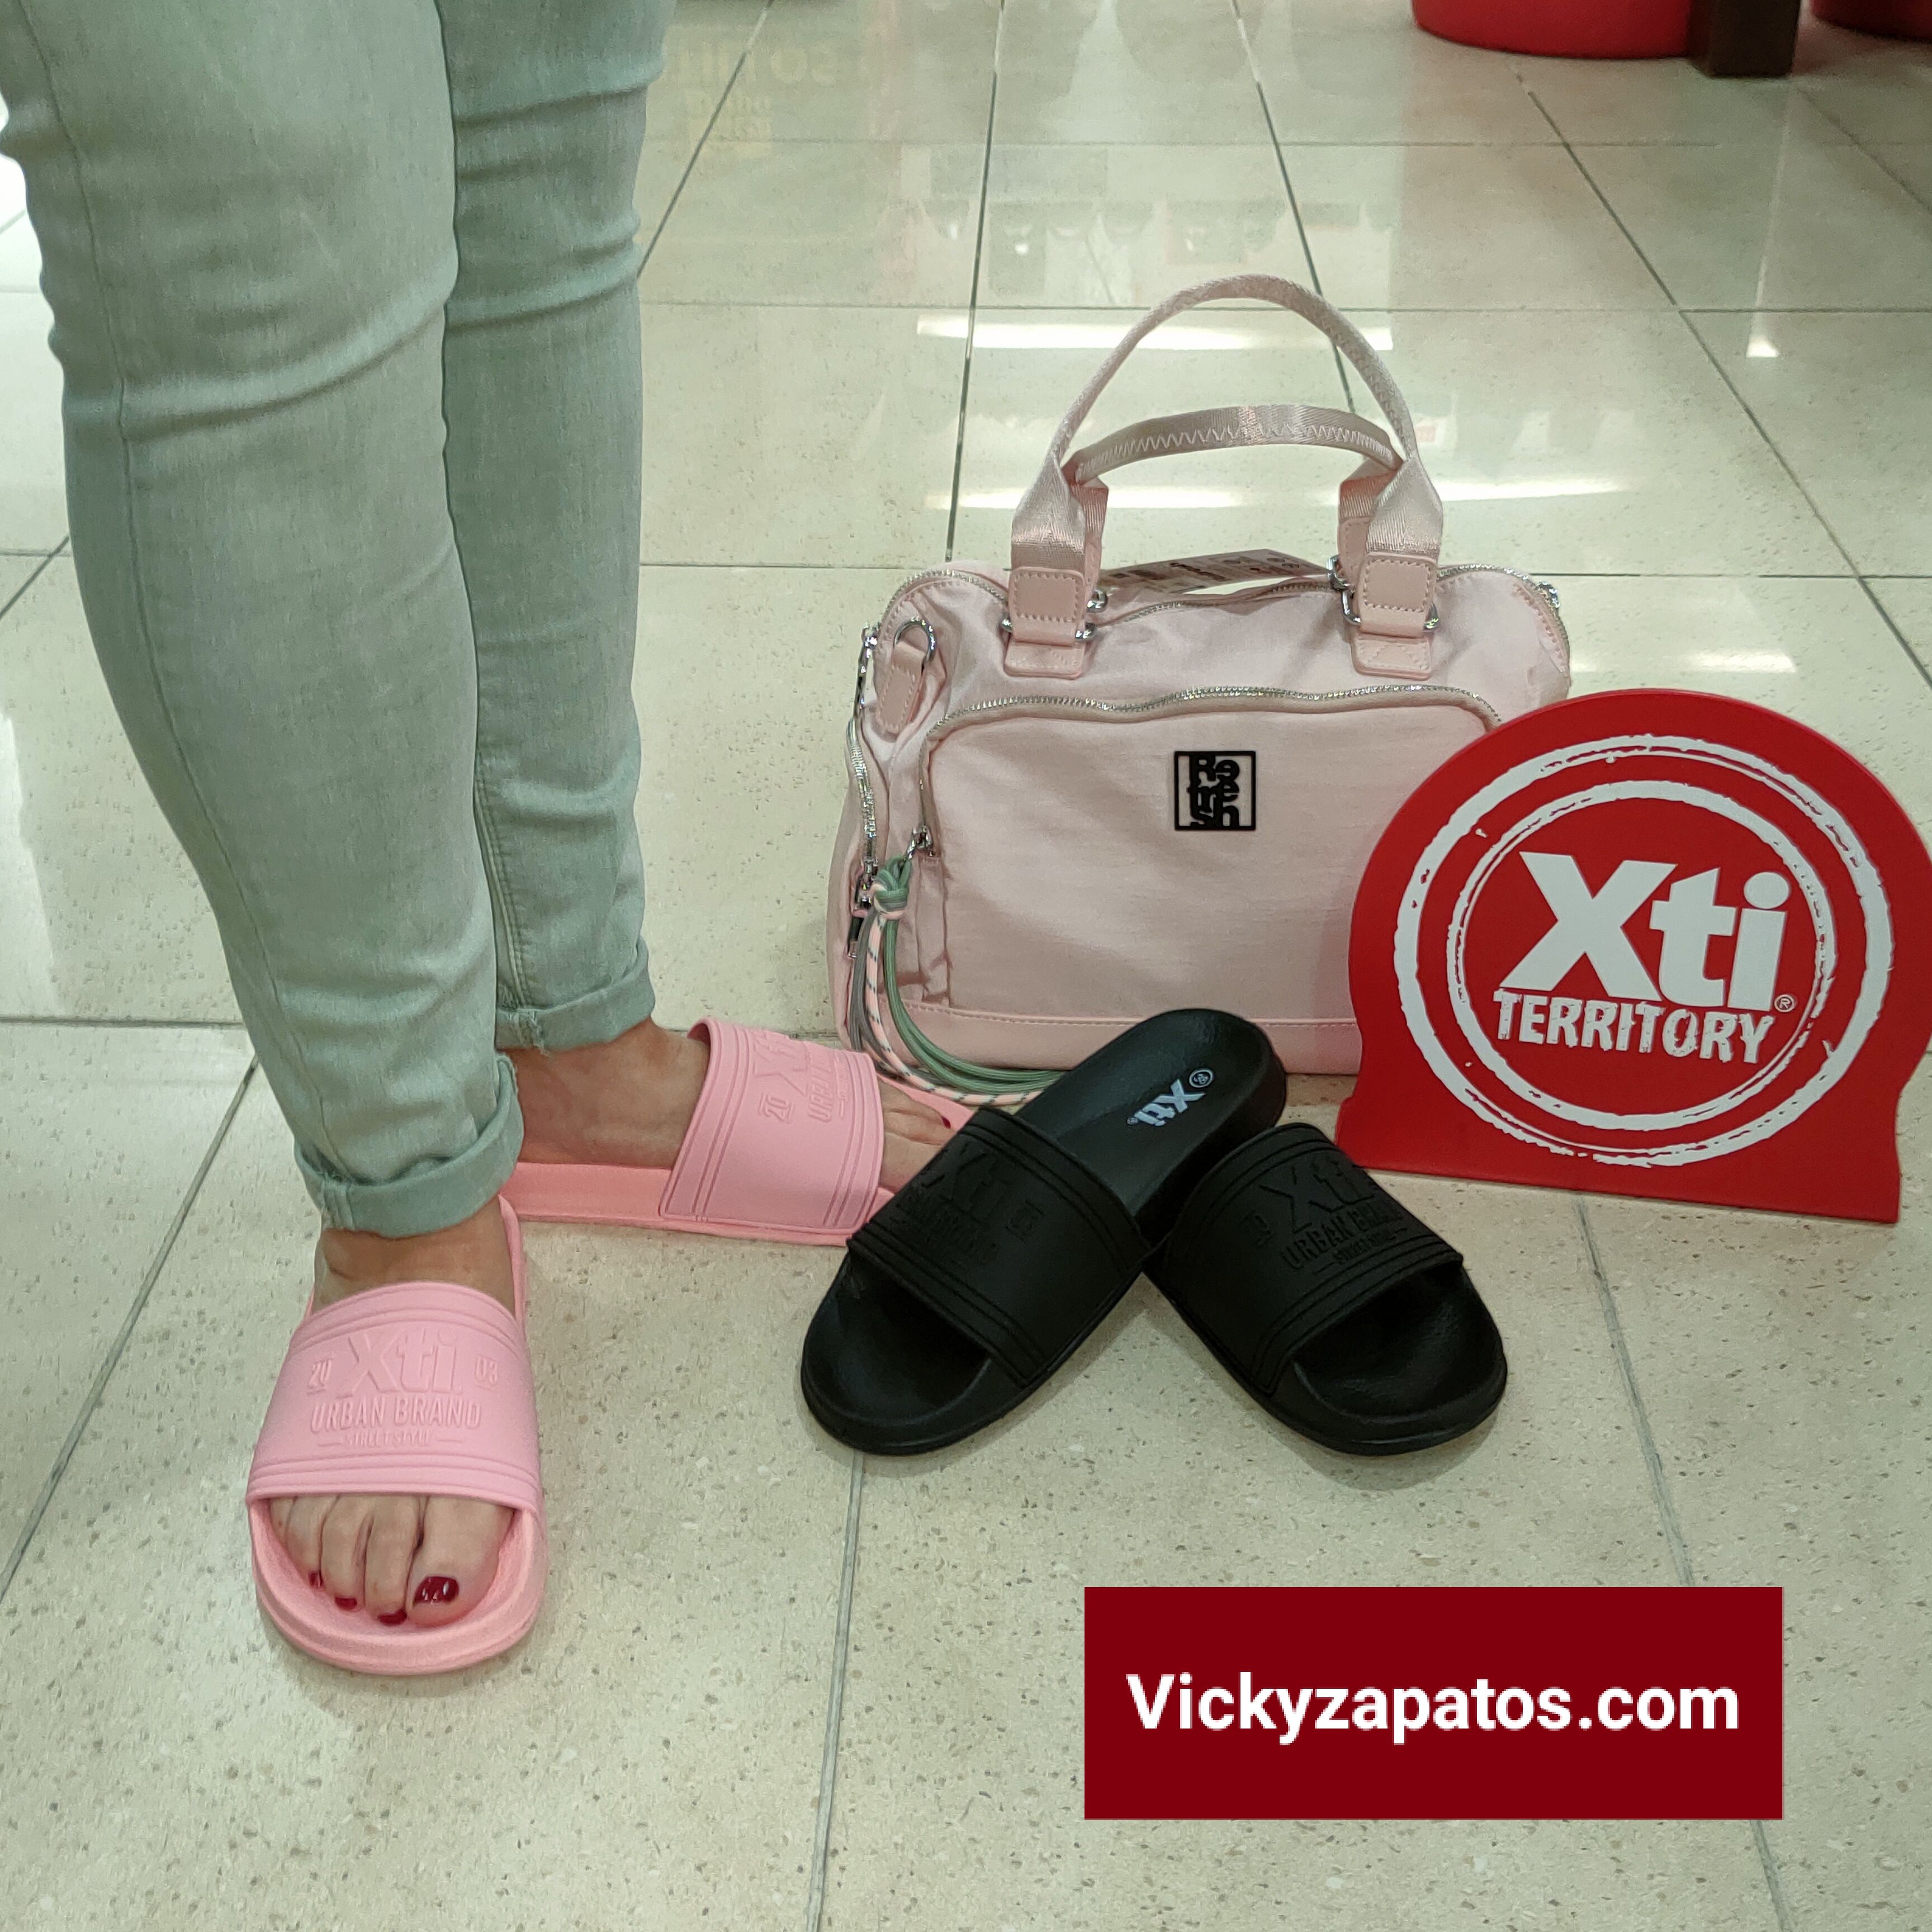 Sandalia Piscina de Pala XTI 44820 Calidad y Confort Marca Española | Calzados VICKY